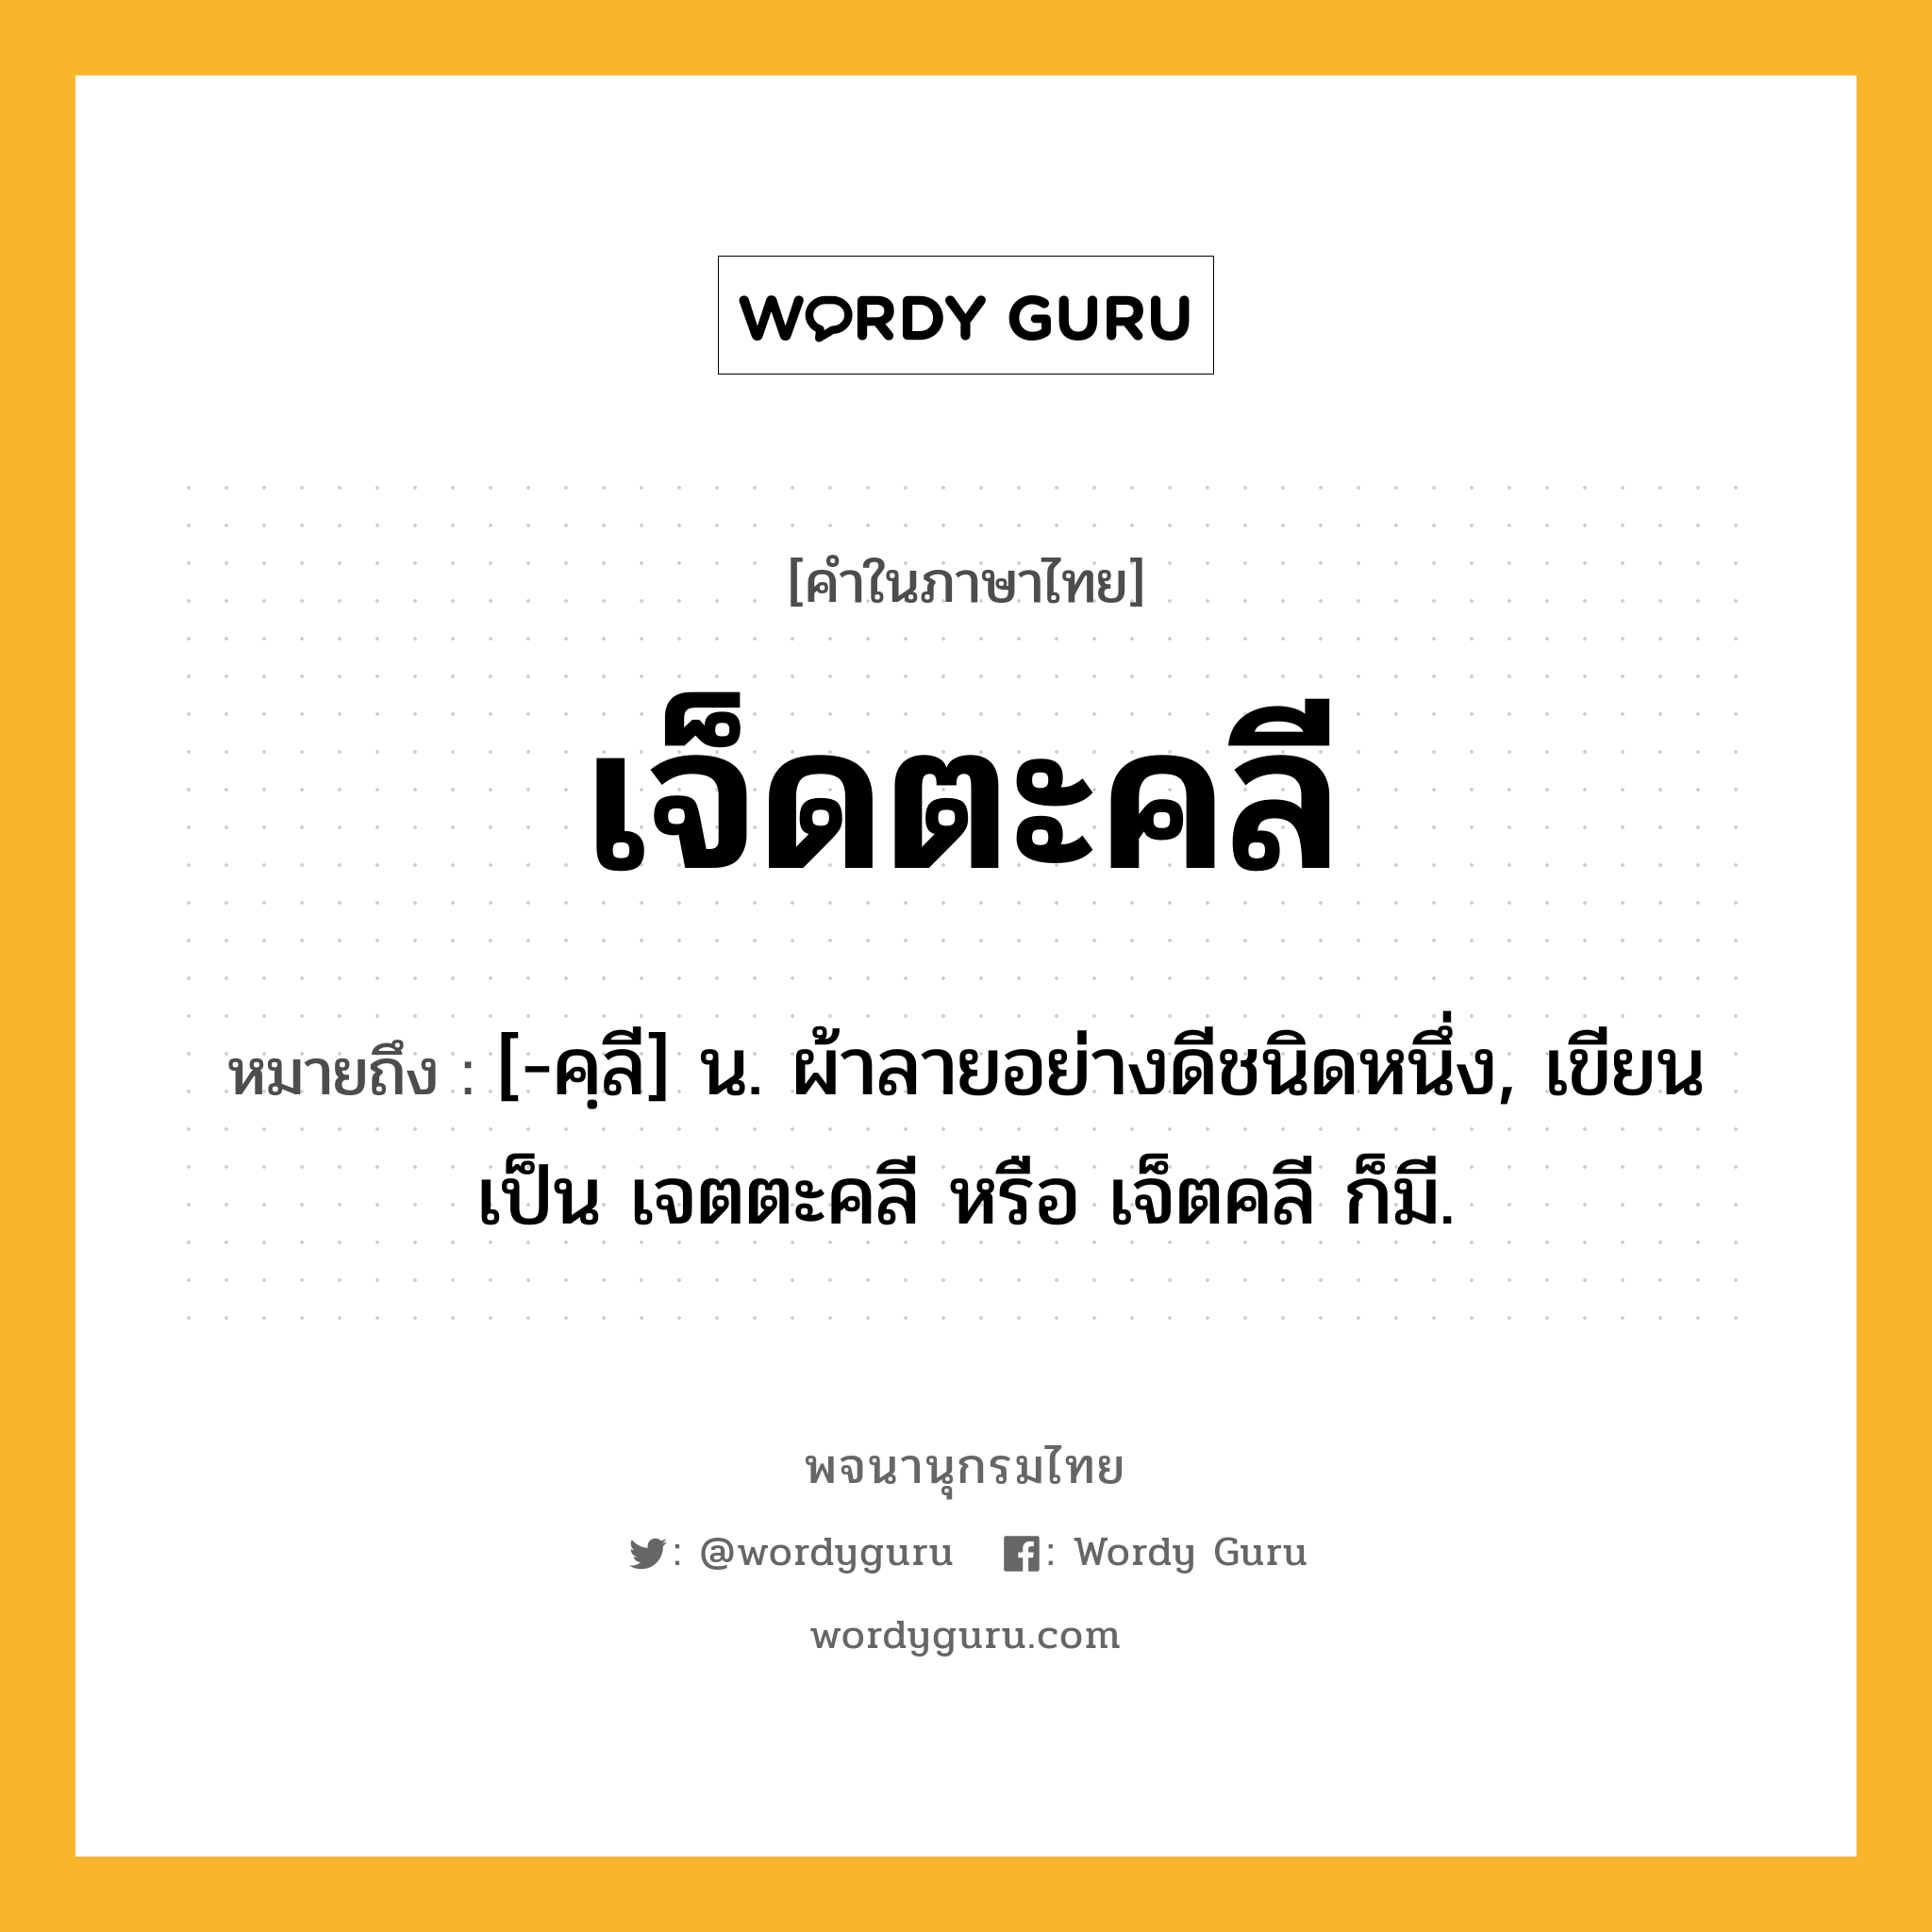 เจ็ดตะคลี หมายถึงอะไร?, คำในภาษาไทย เจ็ดตะคลี หมายถึง [-คฺลี] น. ผ้าลายอย่างดีชนิดหนึ่ง, เขียนเป็น เจตตะคลี หรือ เจ็ตคลี ก็มี.